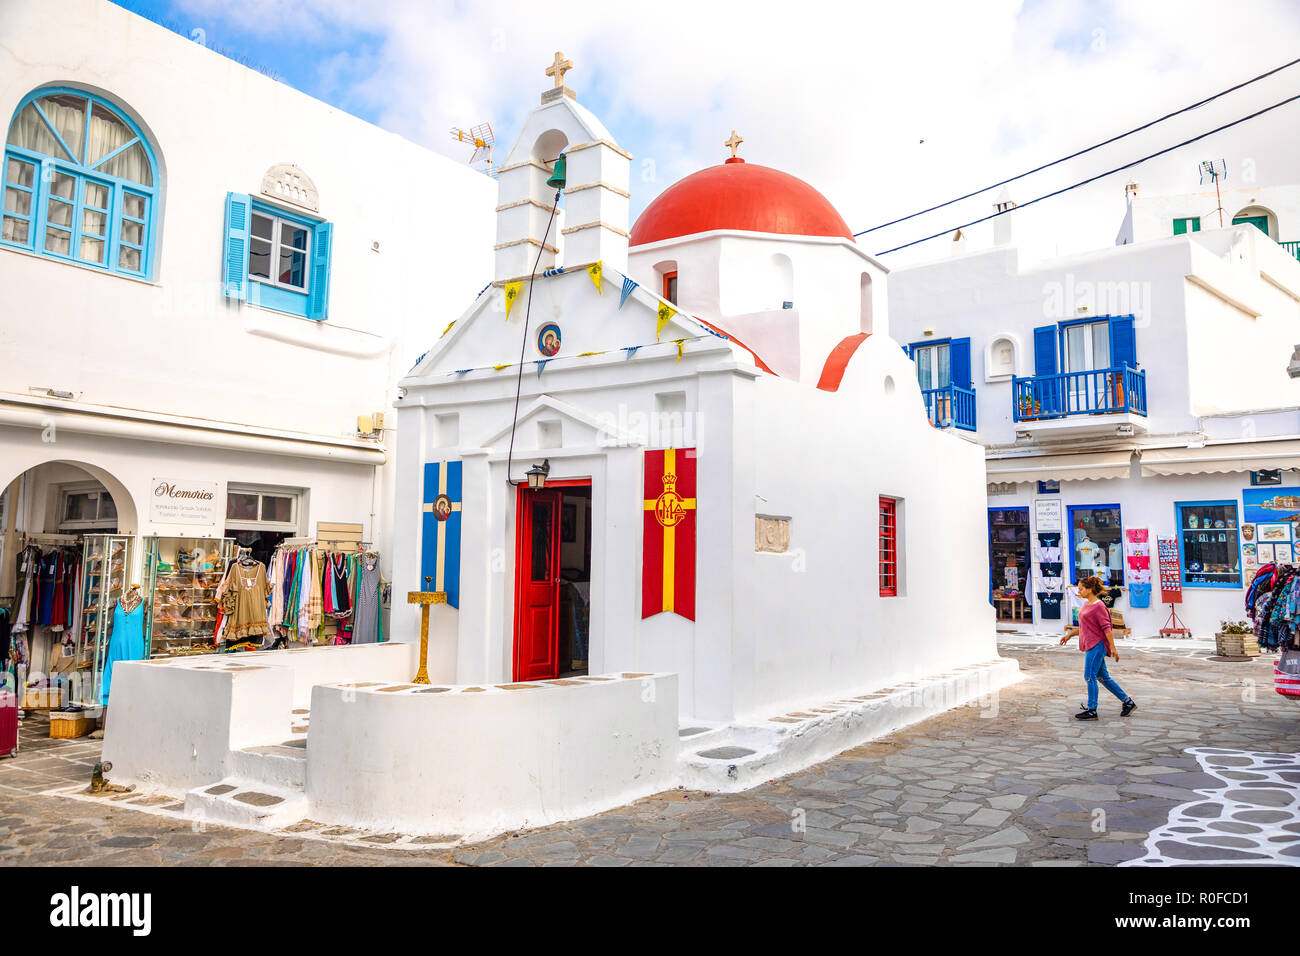 Mykonos, Grèce - 17.10.2018 : Agia Kyriaki Church, église grecque typique bâtiment blanc avec dôme rouge contre le ciel bleu sur l'île de Mykonos, Grèce Banque D'Images